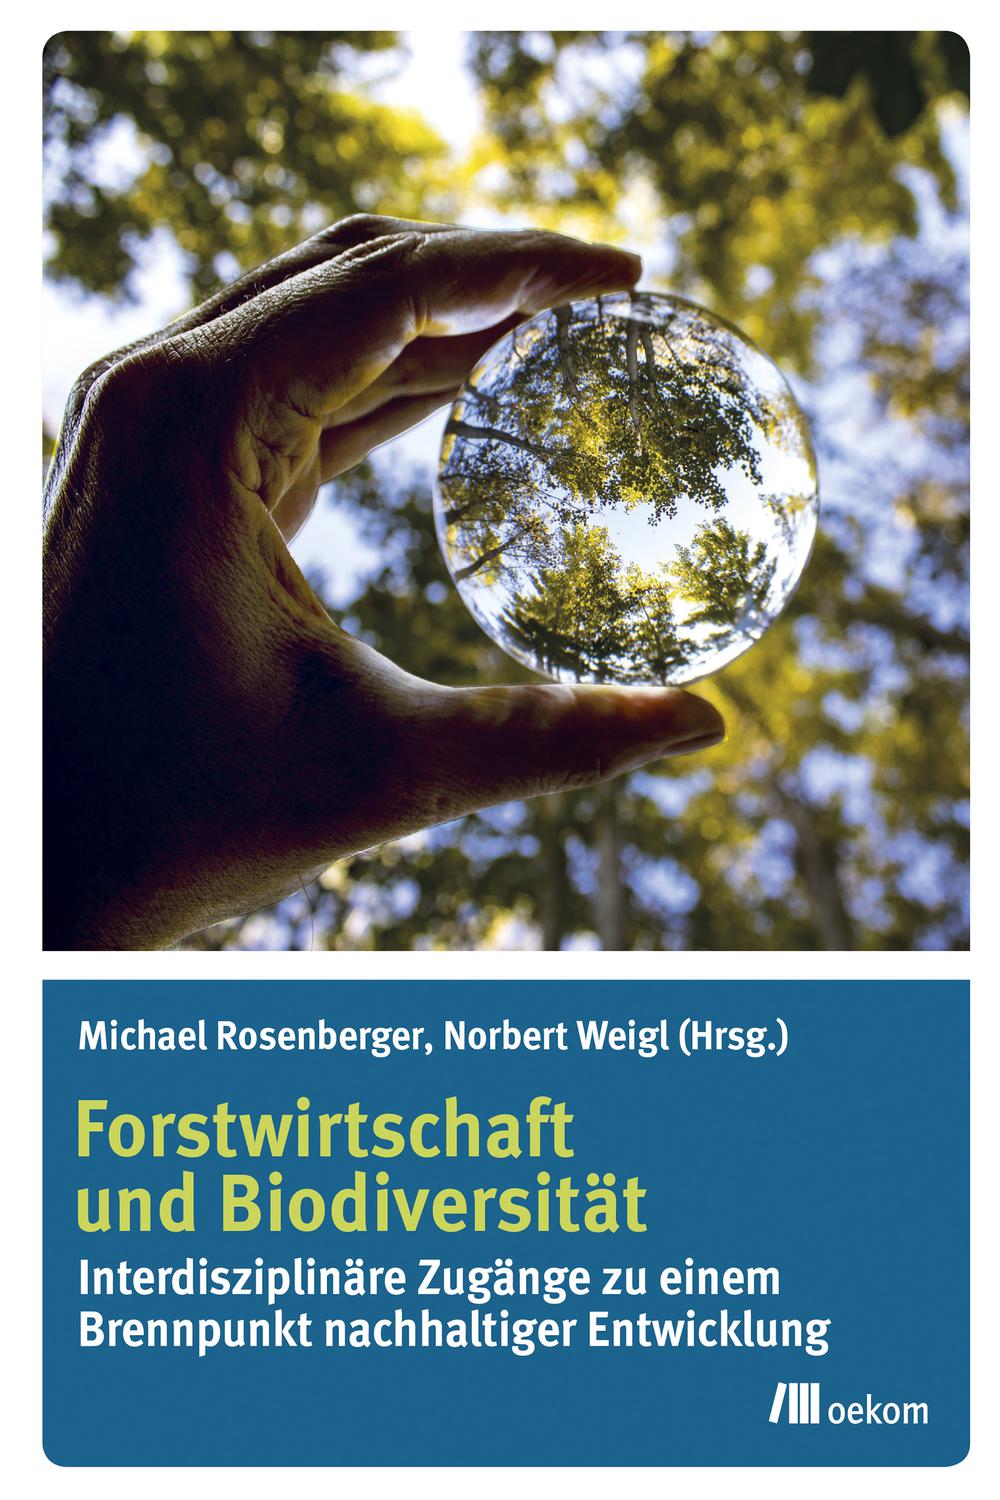 Forstwirtschaft und Biodiversität - Michael Rosenberger, Norbert Weigl